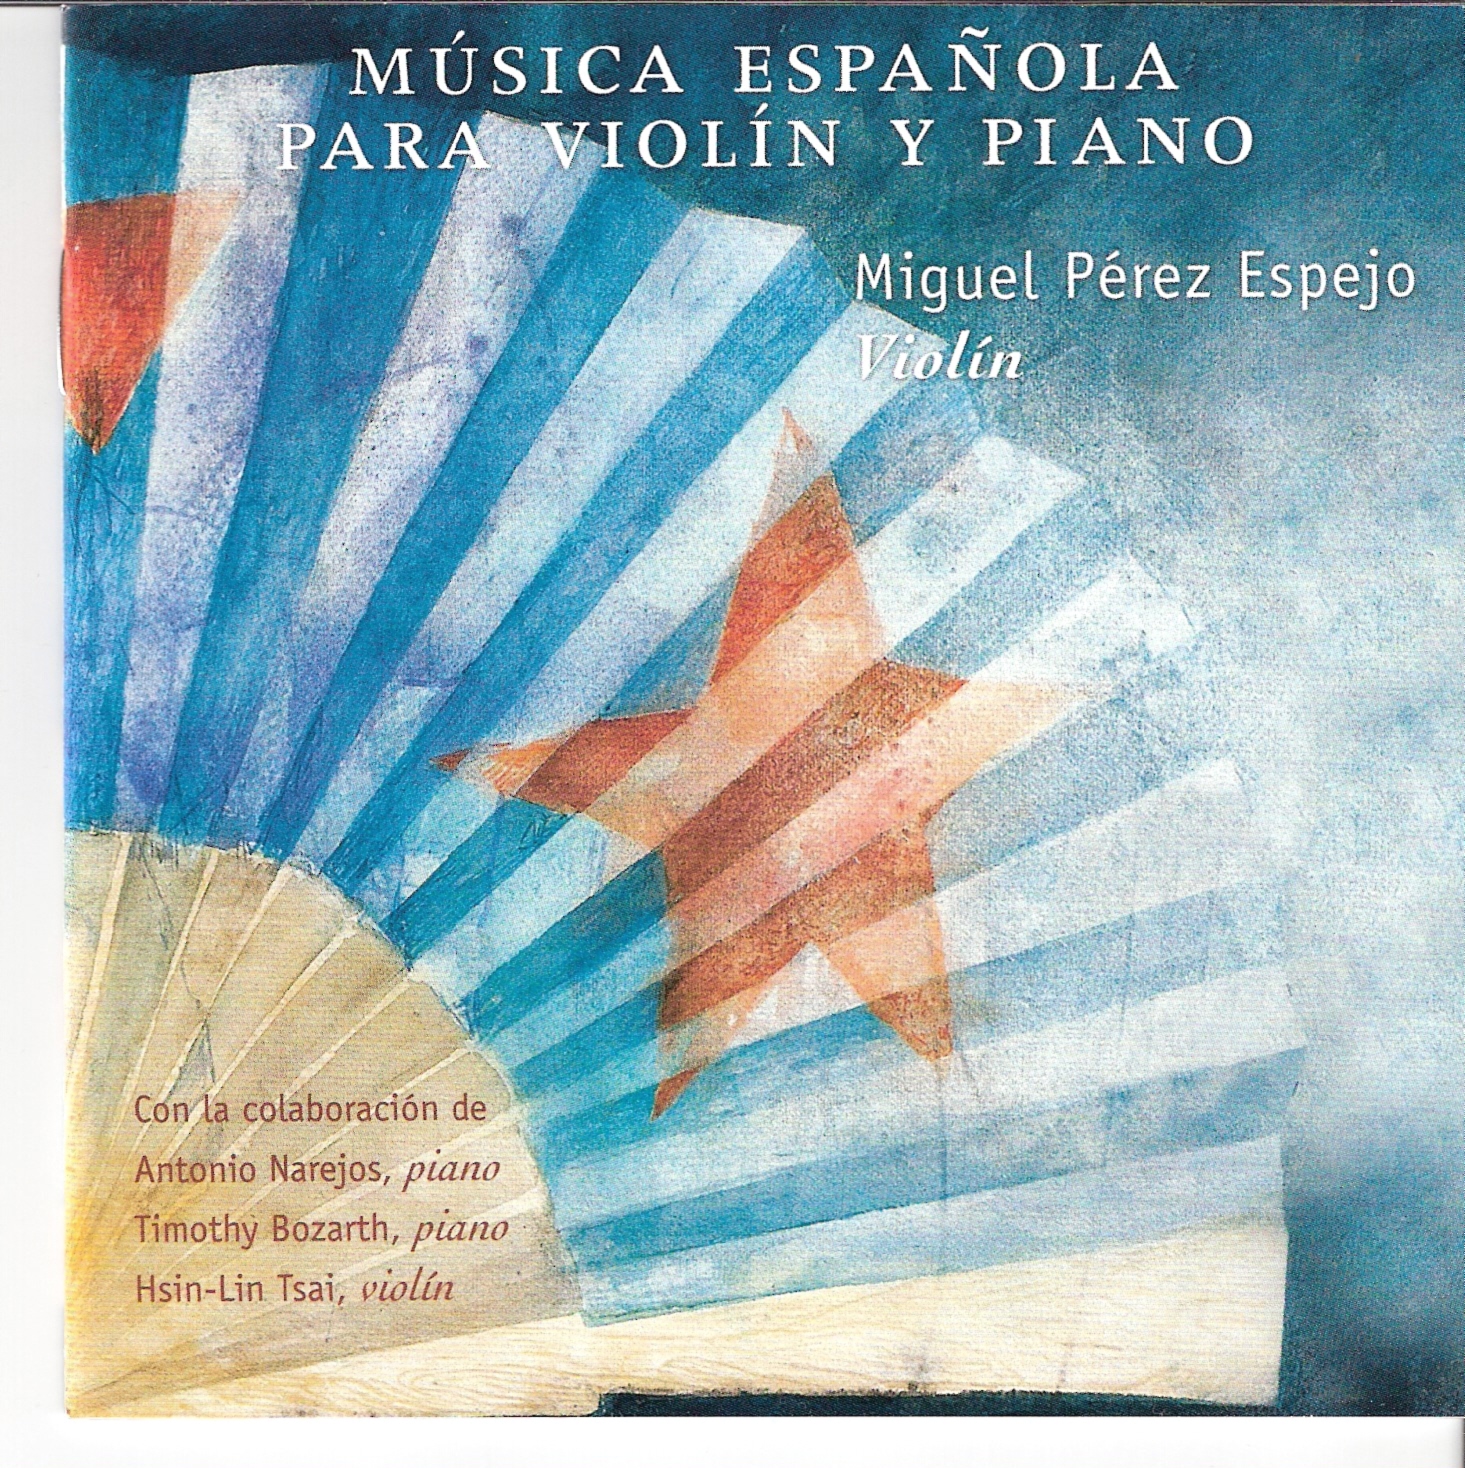 Música española para violin y piano, RTVE MUSICA